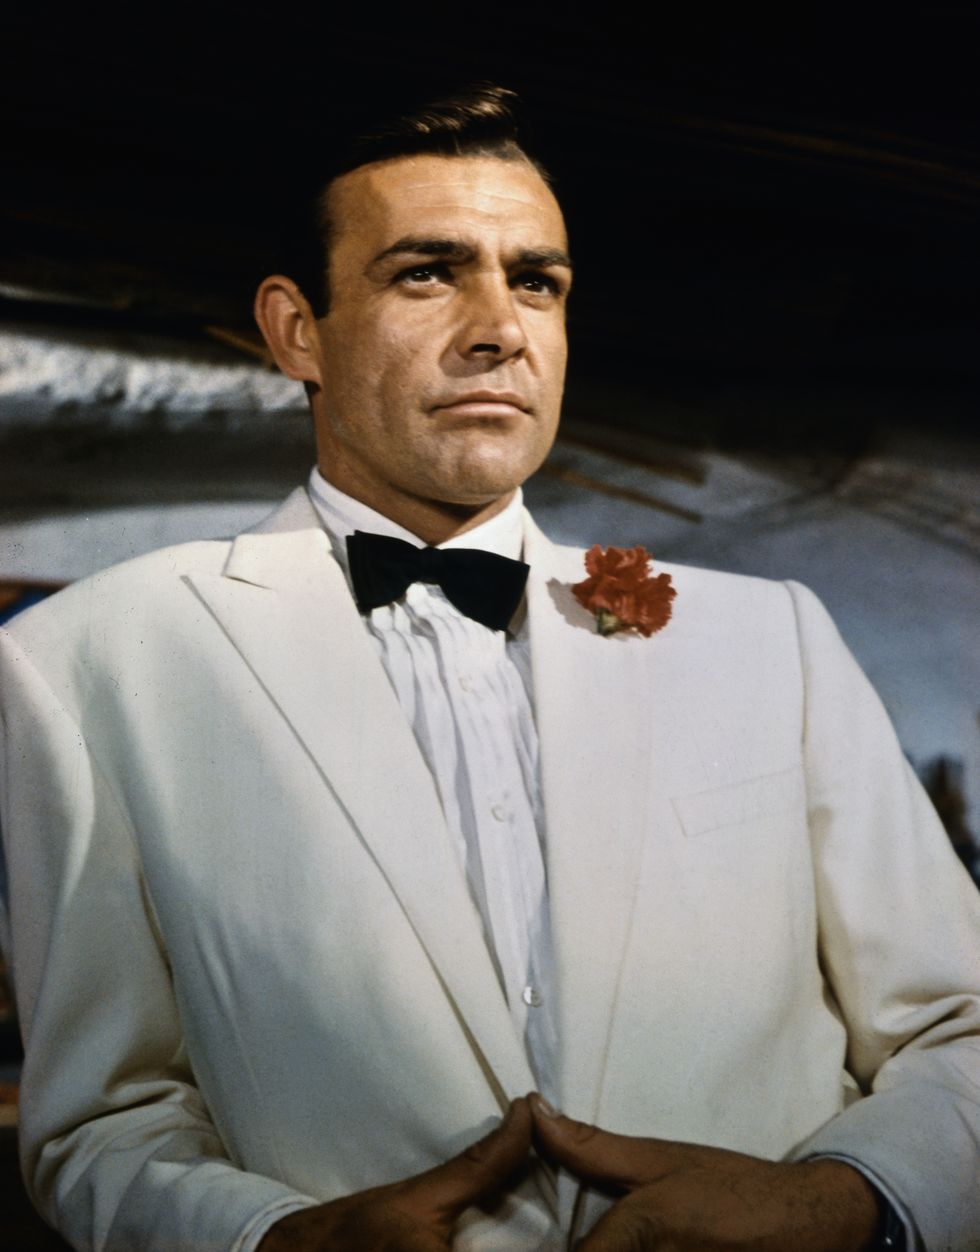 James Bond star Sean Connery 'did movie scenes in just underwear